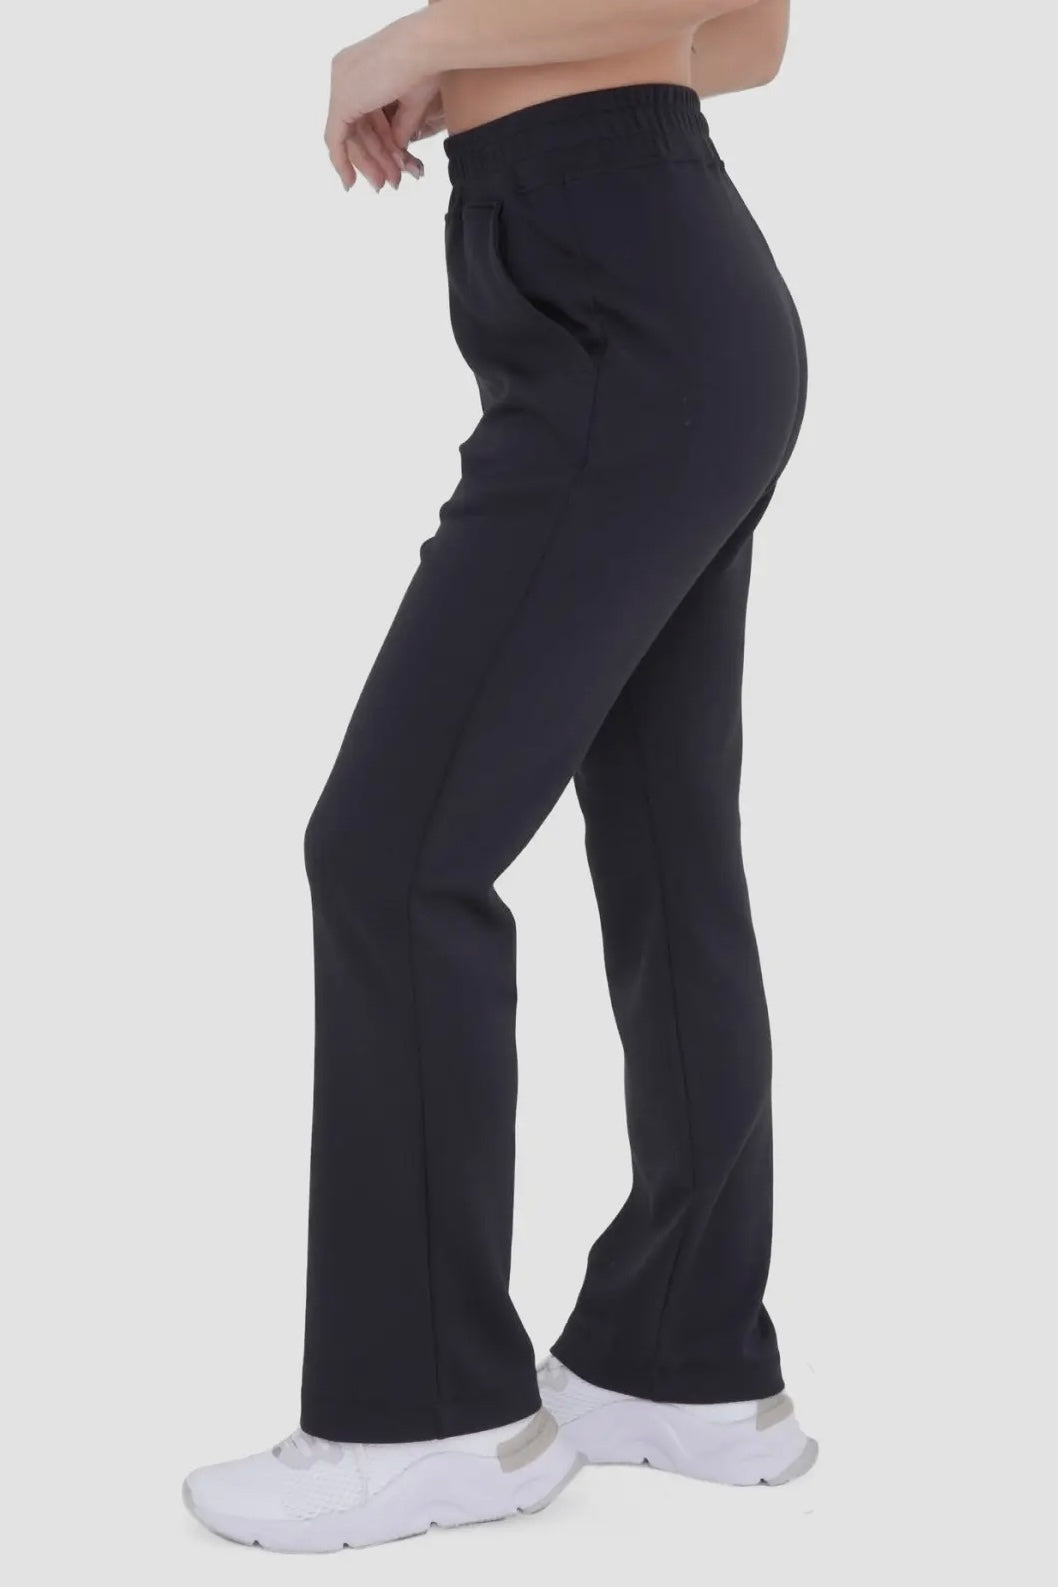 Black Modal Blend High Waist Pants